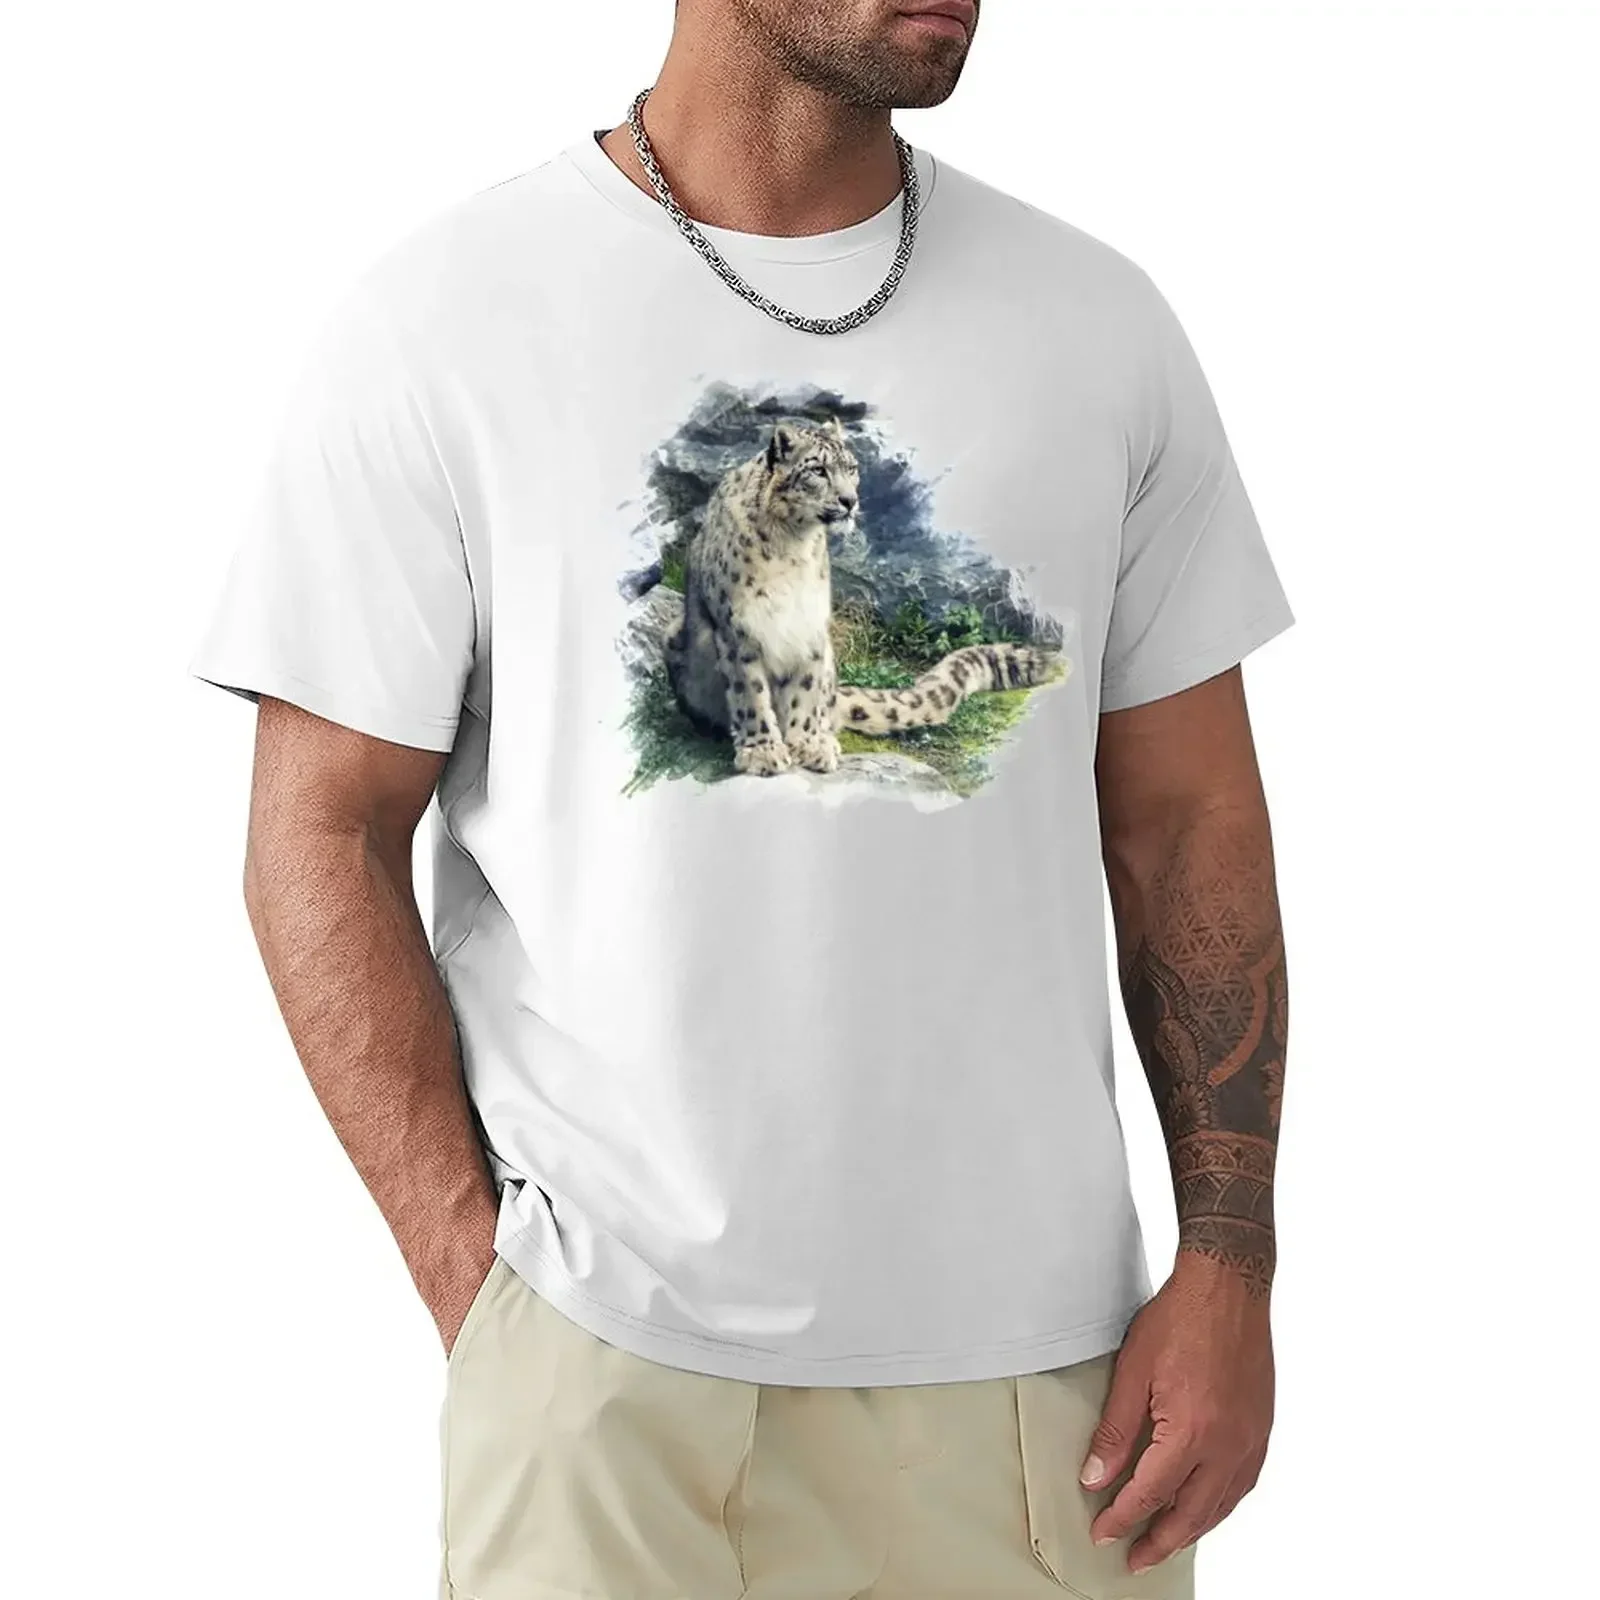 

Snow Leopard T-Shirt anime blacks men t shirts plus sizes plain boys whites boys animal print men clothings